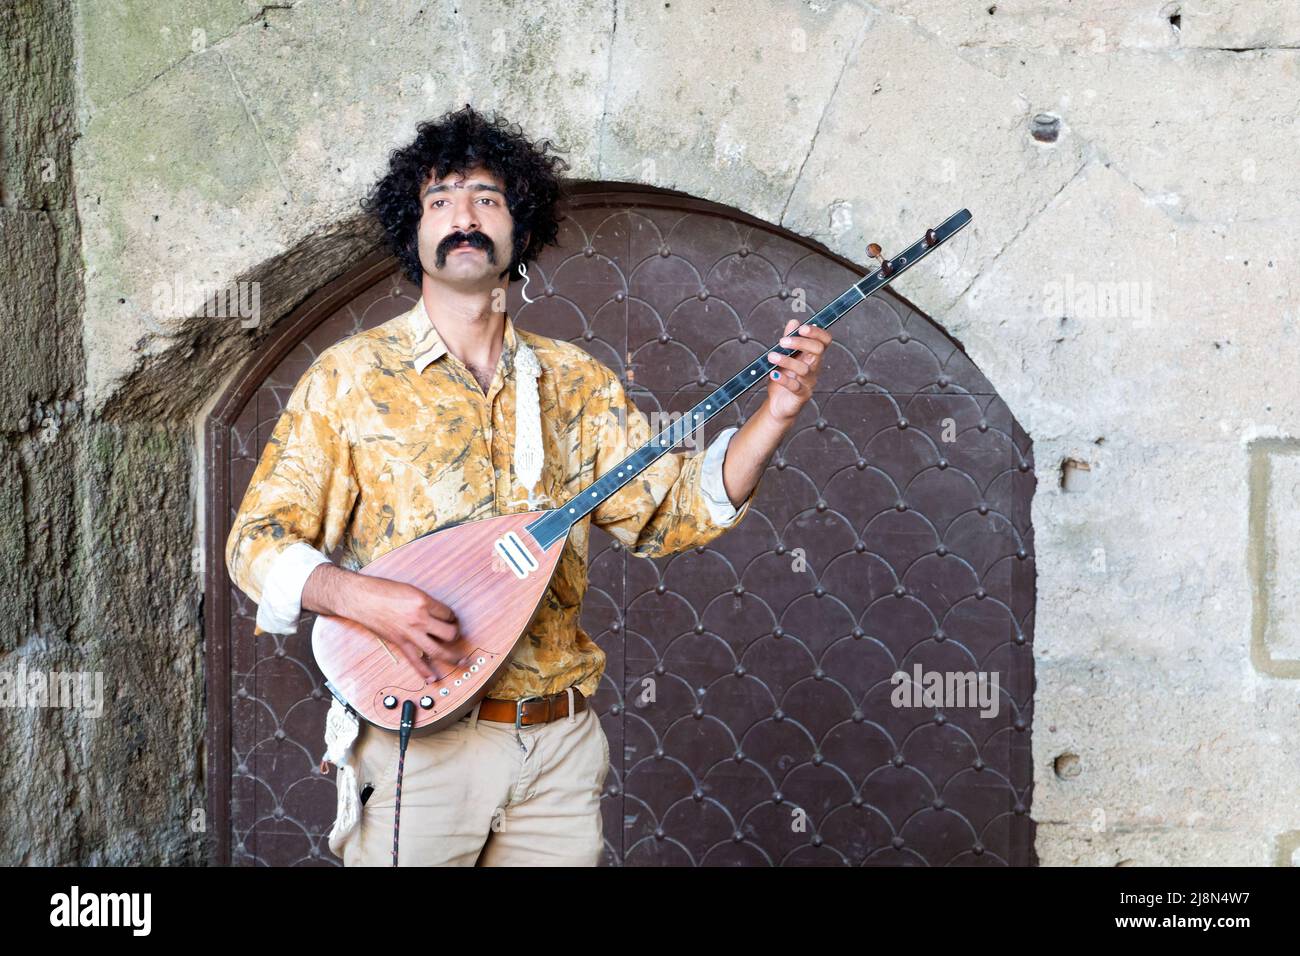 Ein männlicher Straßenmusiker, der ein Bouzouki spielt, ein griechisches Saiteninstrument. Der Musiker befindet sich in einer Nische in der Altstadt von Rhodos, Rhodos, Griechenland Stockfoto